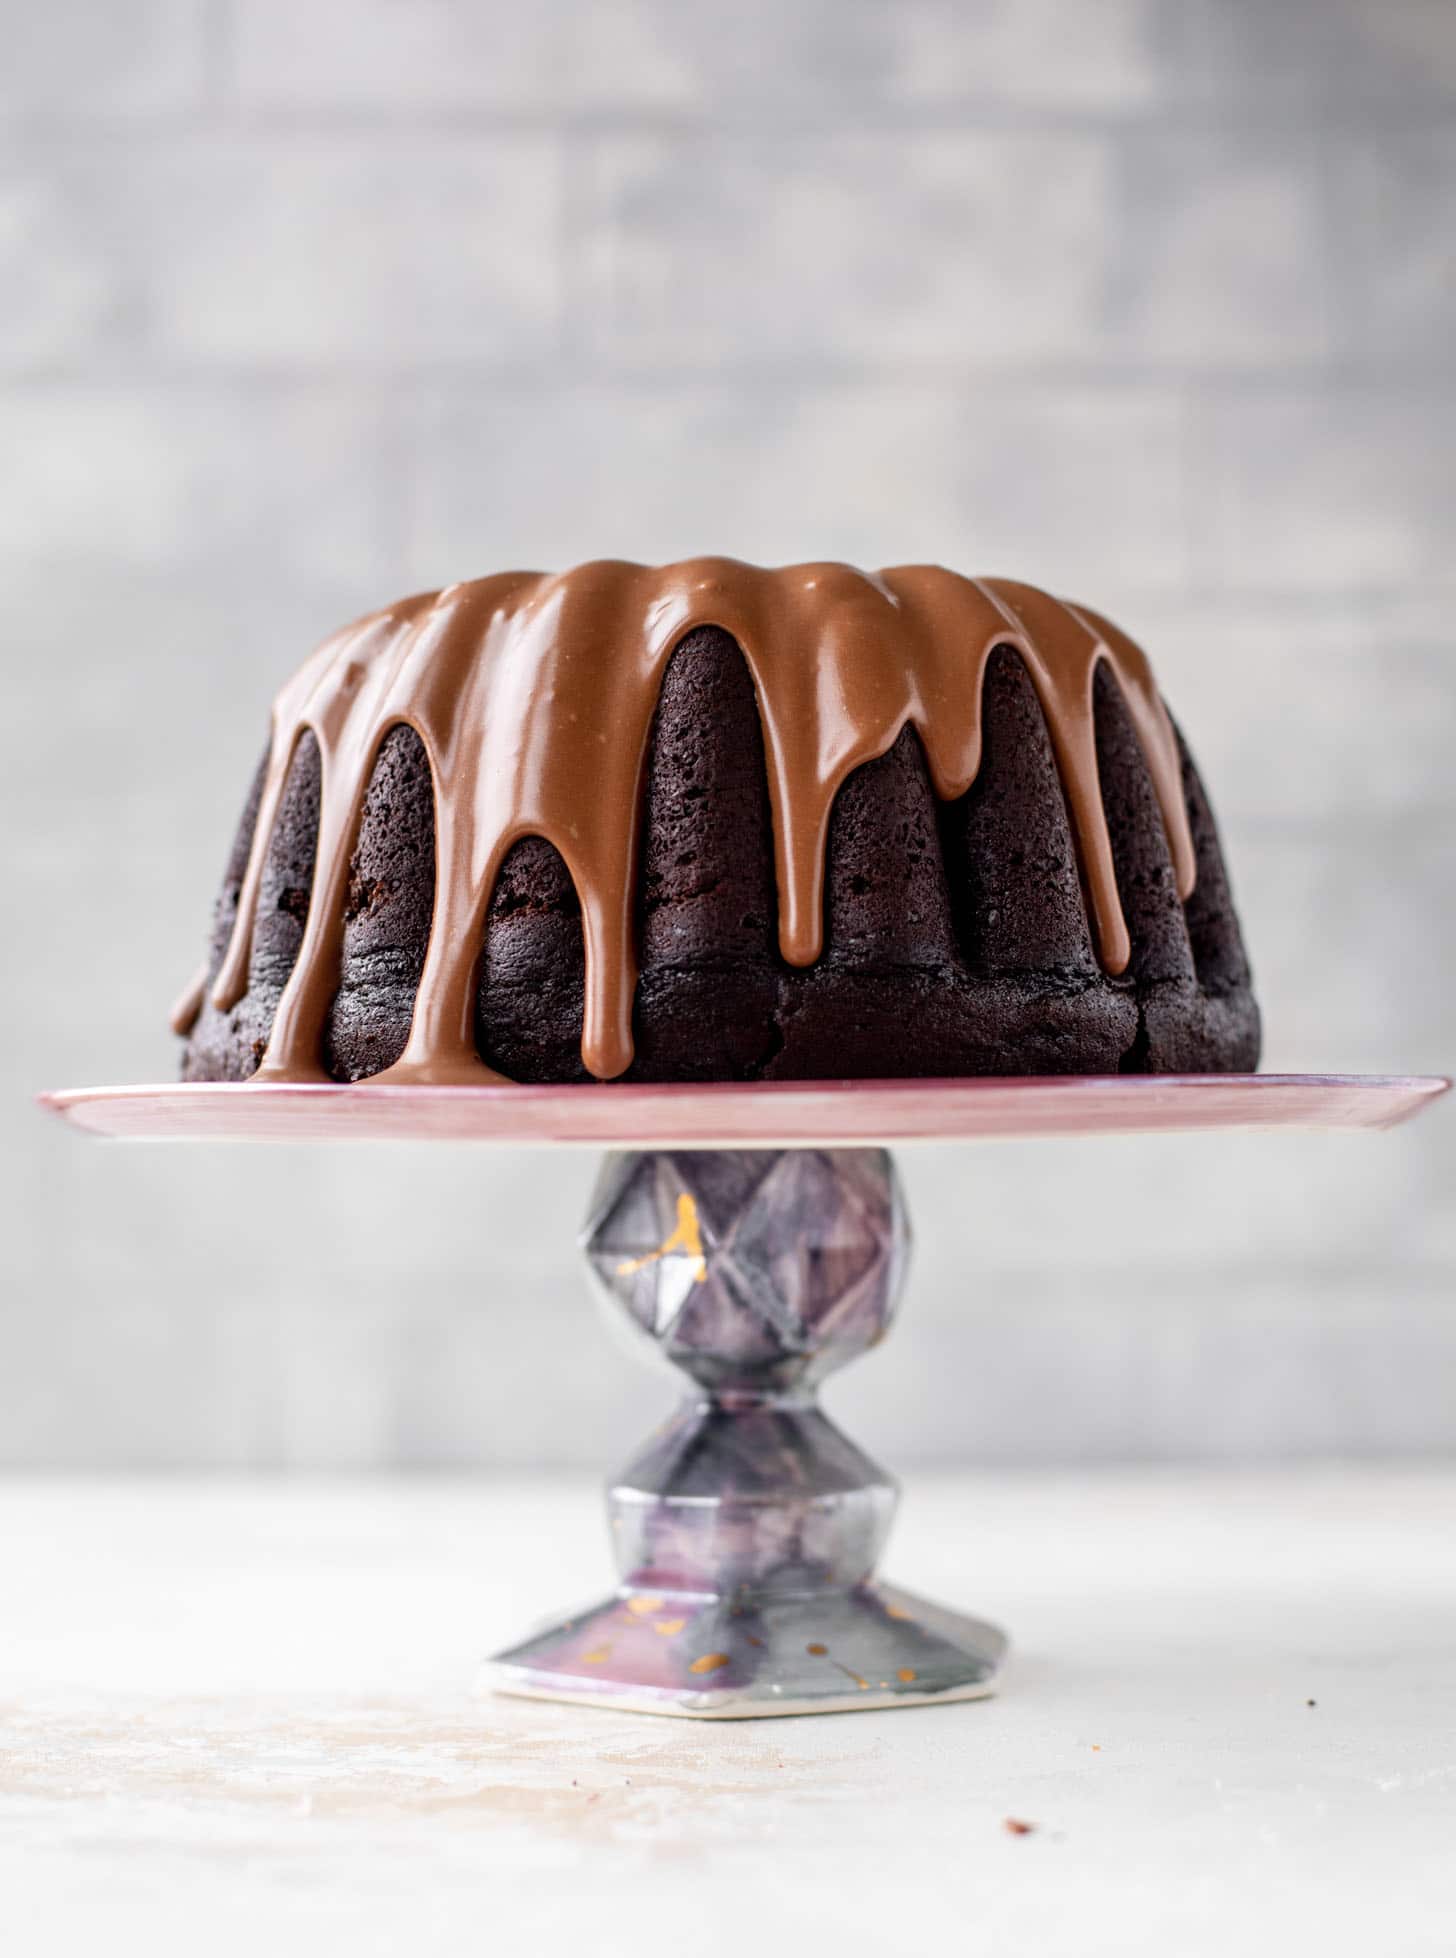 dark chocolate bundt cake with irish cream glaze